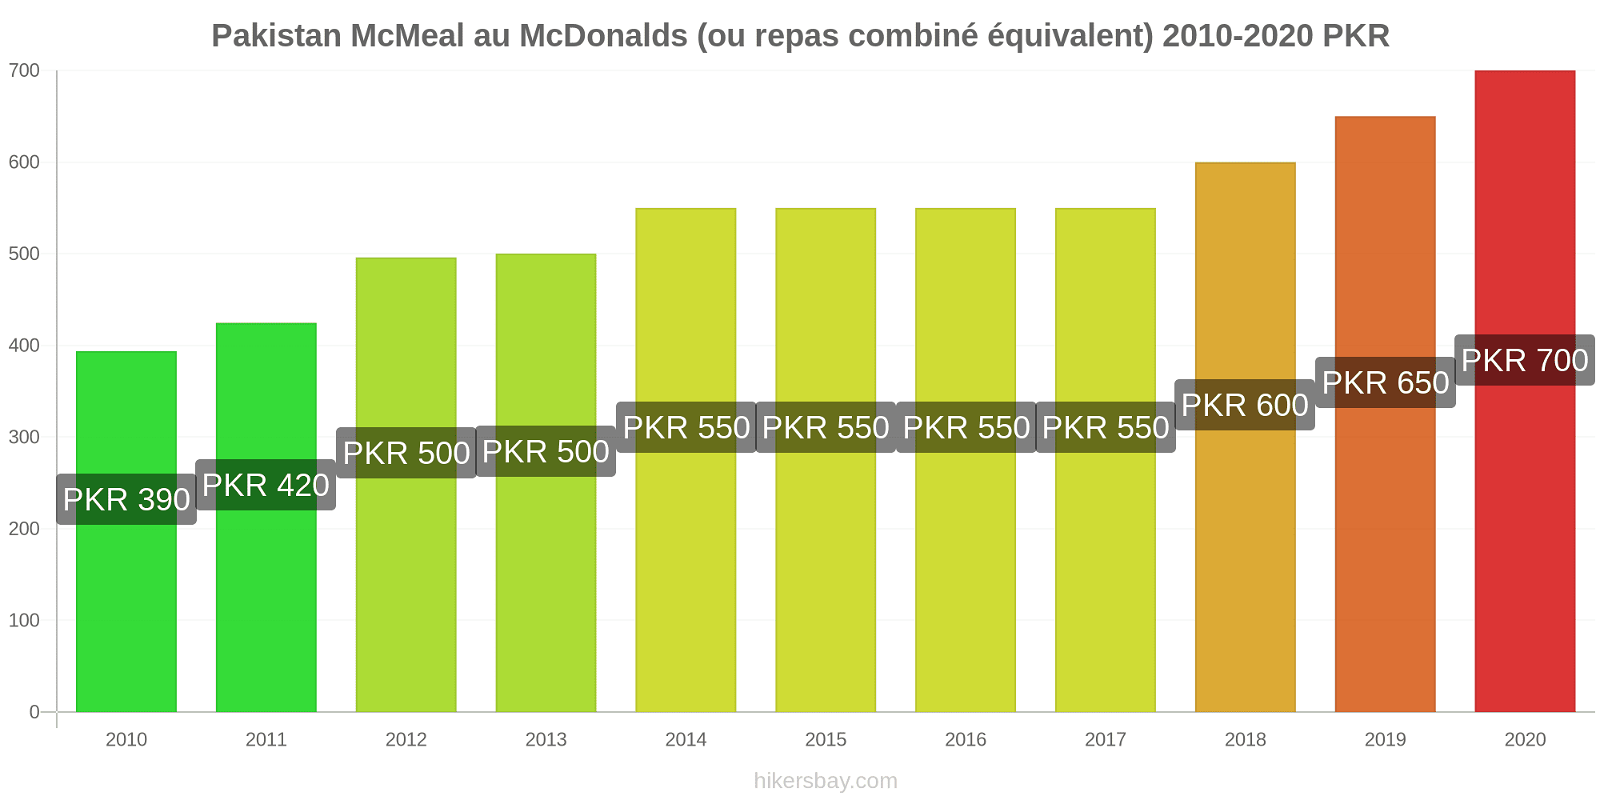 Pakistan changements de prix McMeal à McDonald ' s (ou Combo équivalent tourteau) hikersbay.com